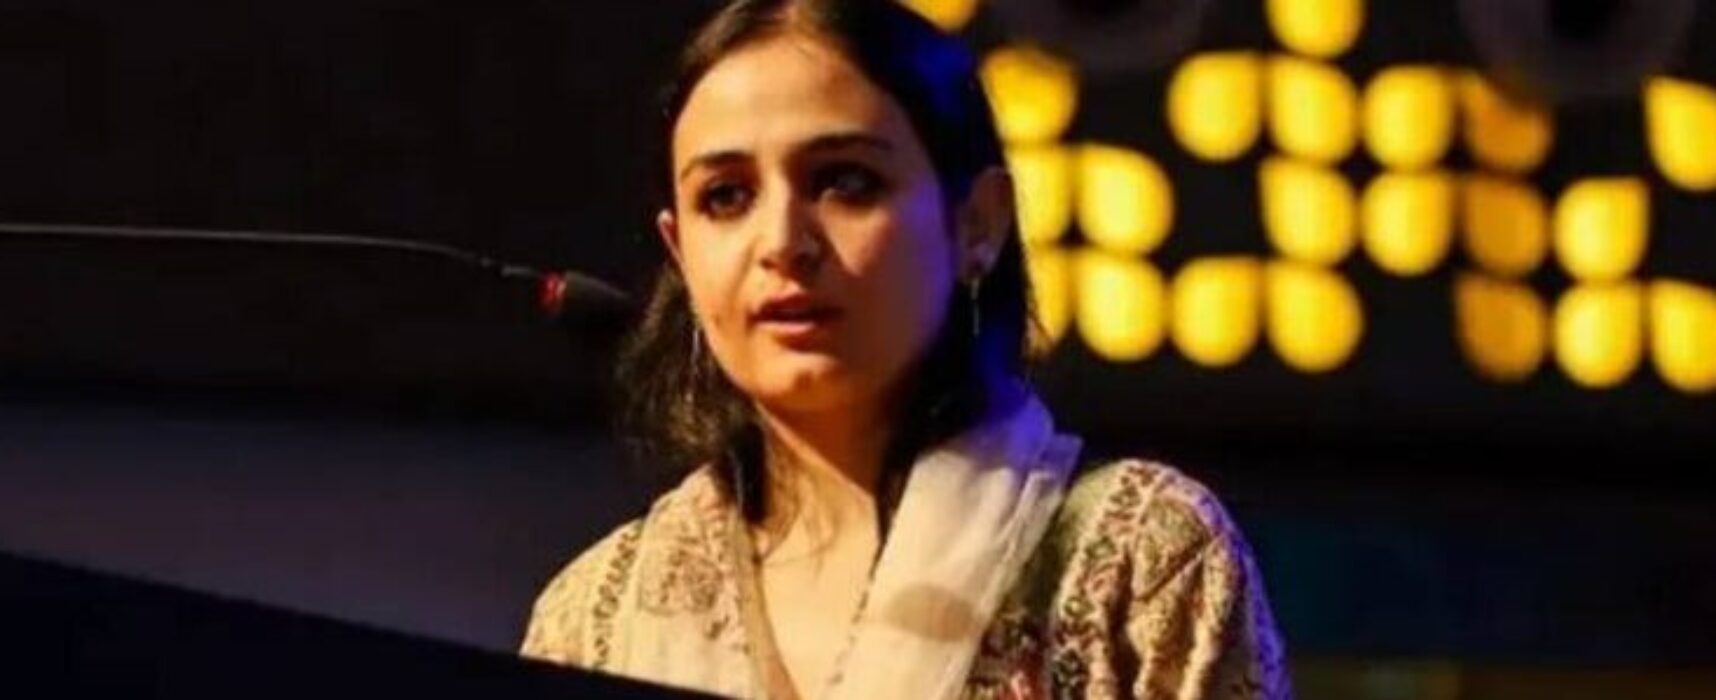 Vencedora do Pulitzer, Sanna Mattoo, é impedida de comparecer a premiação por autoridades indianas